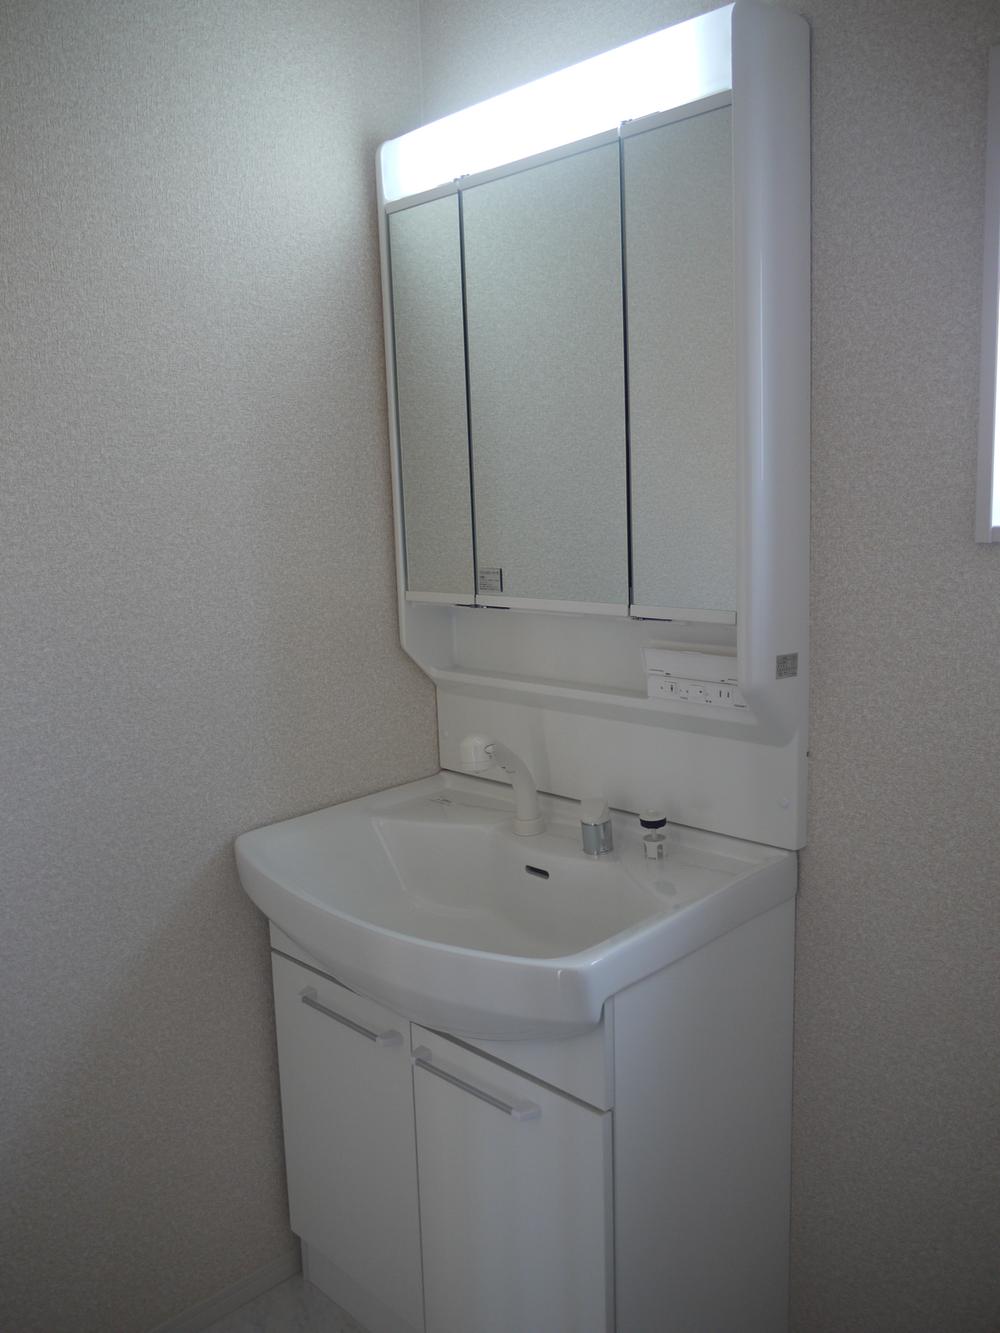 Wash basin, toilet. Indoor (12 May 2013)